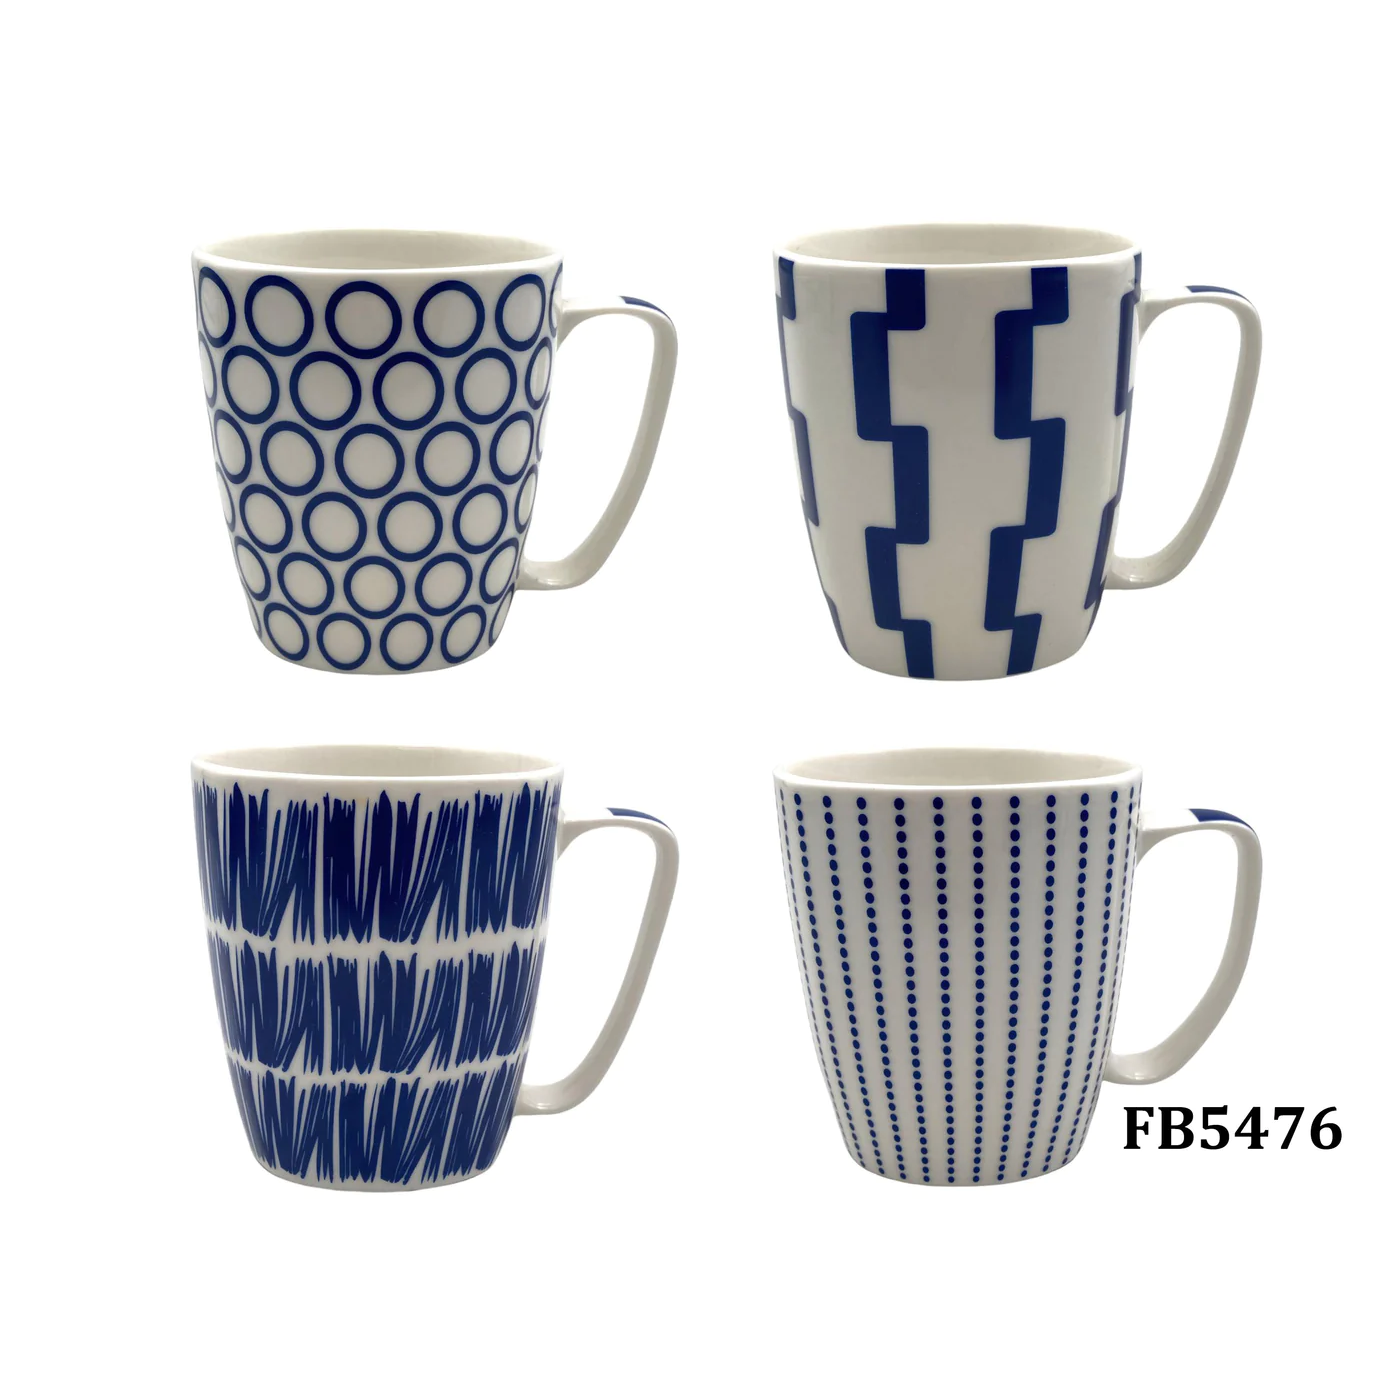 Large Squared Porcelain Mug with Bleu design